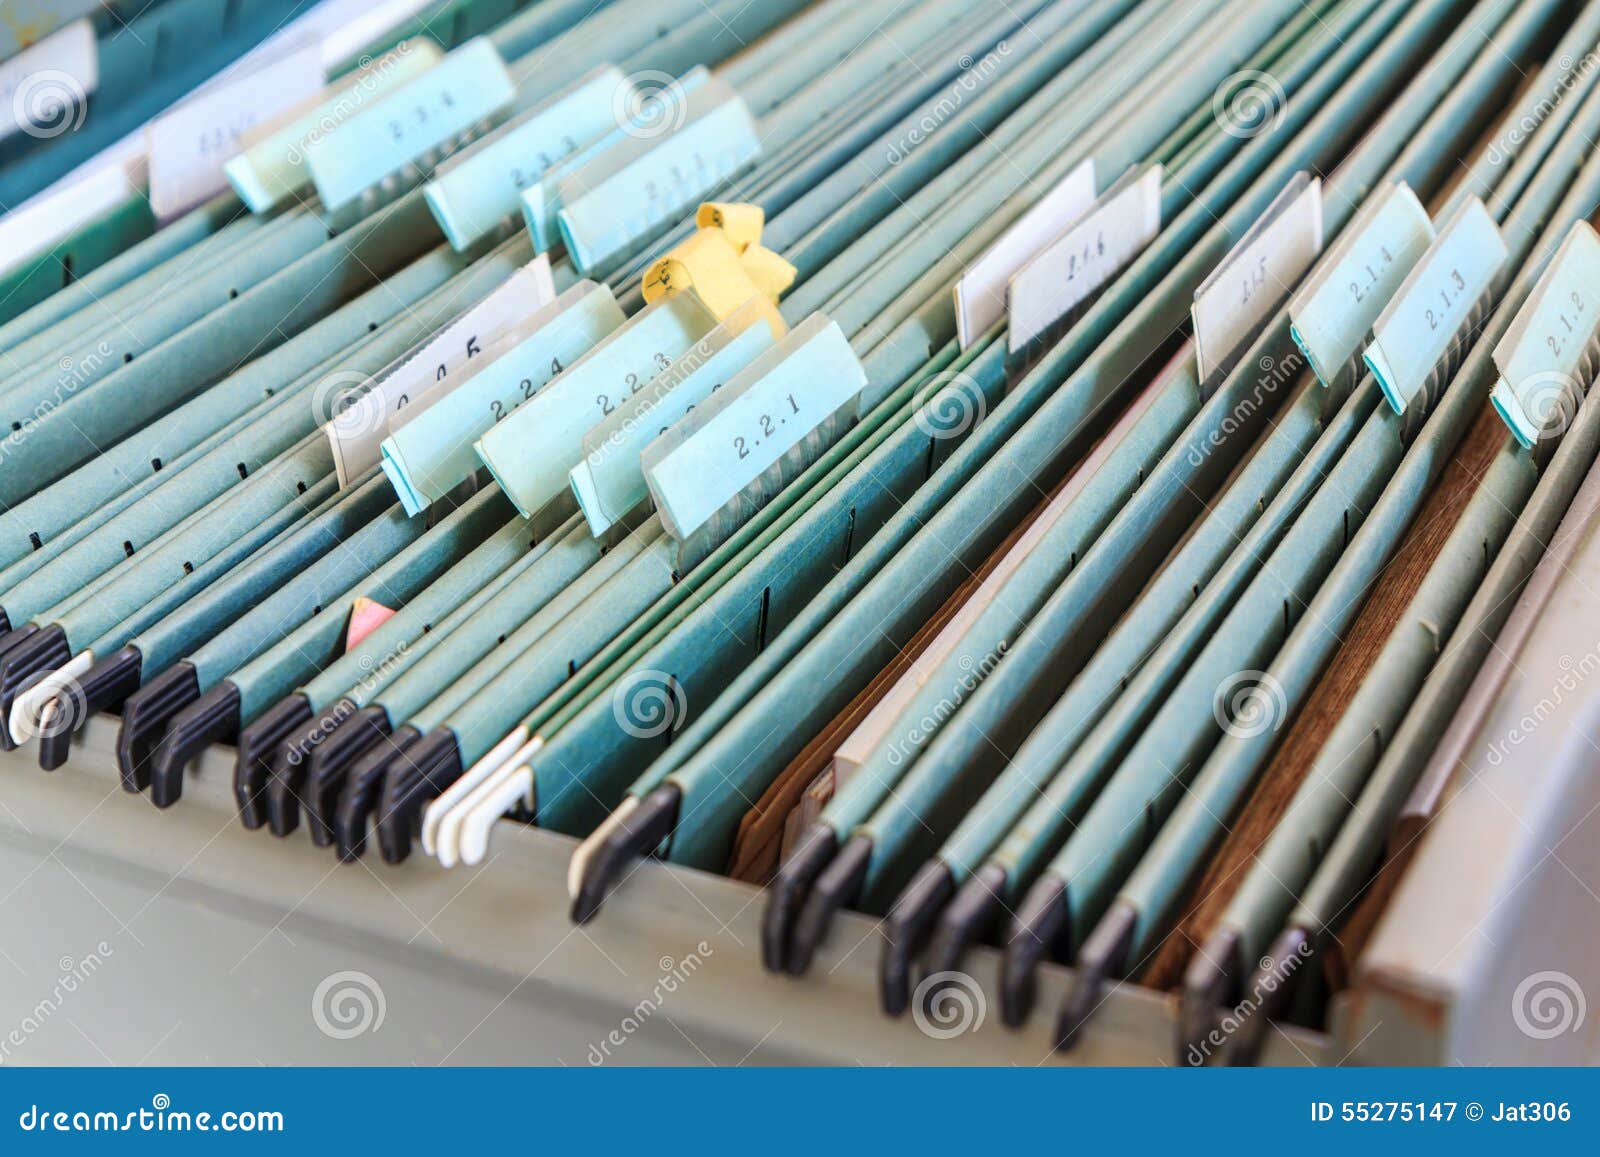 file folders in a filing cabinet